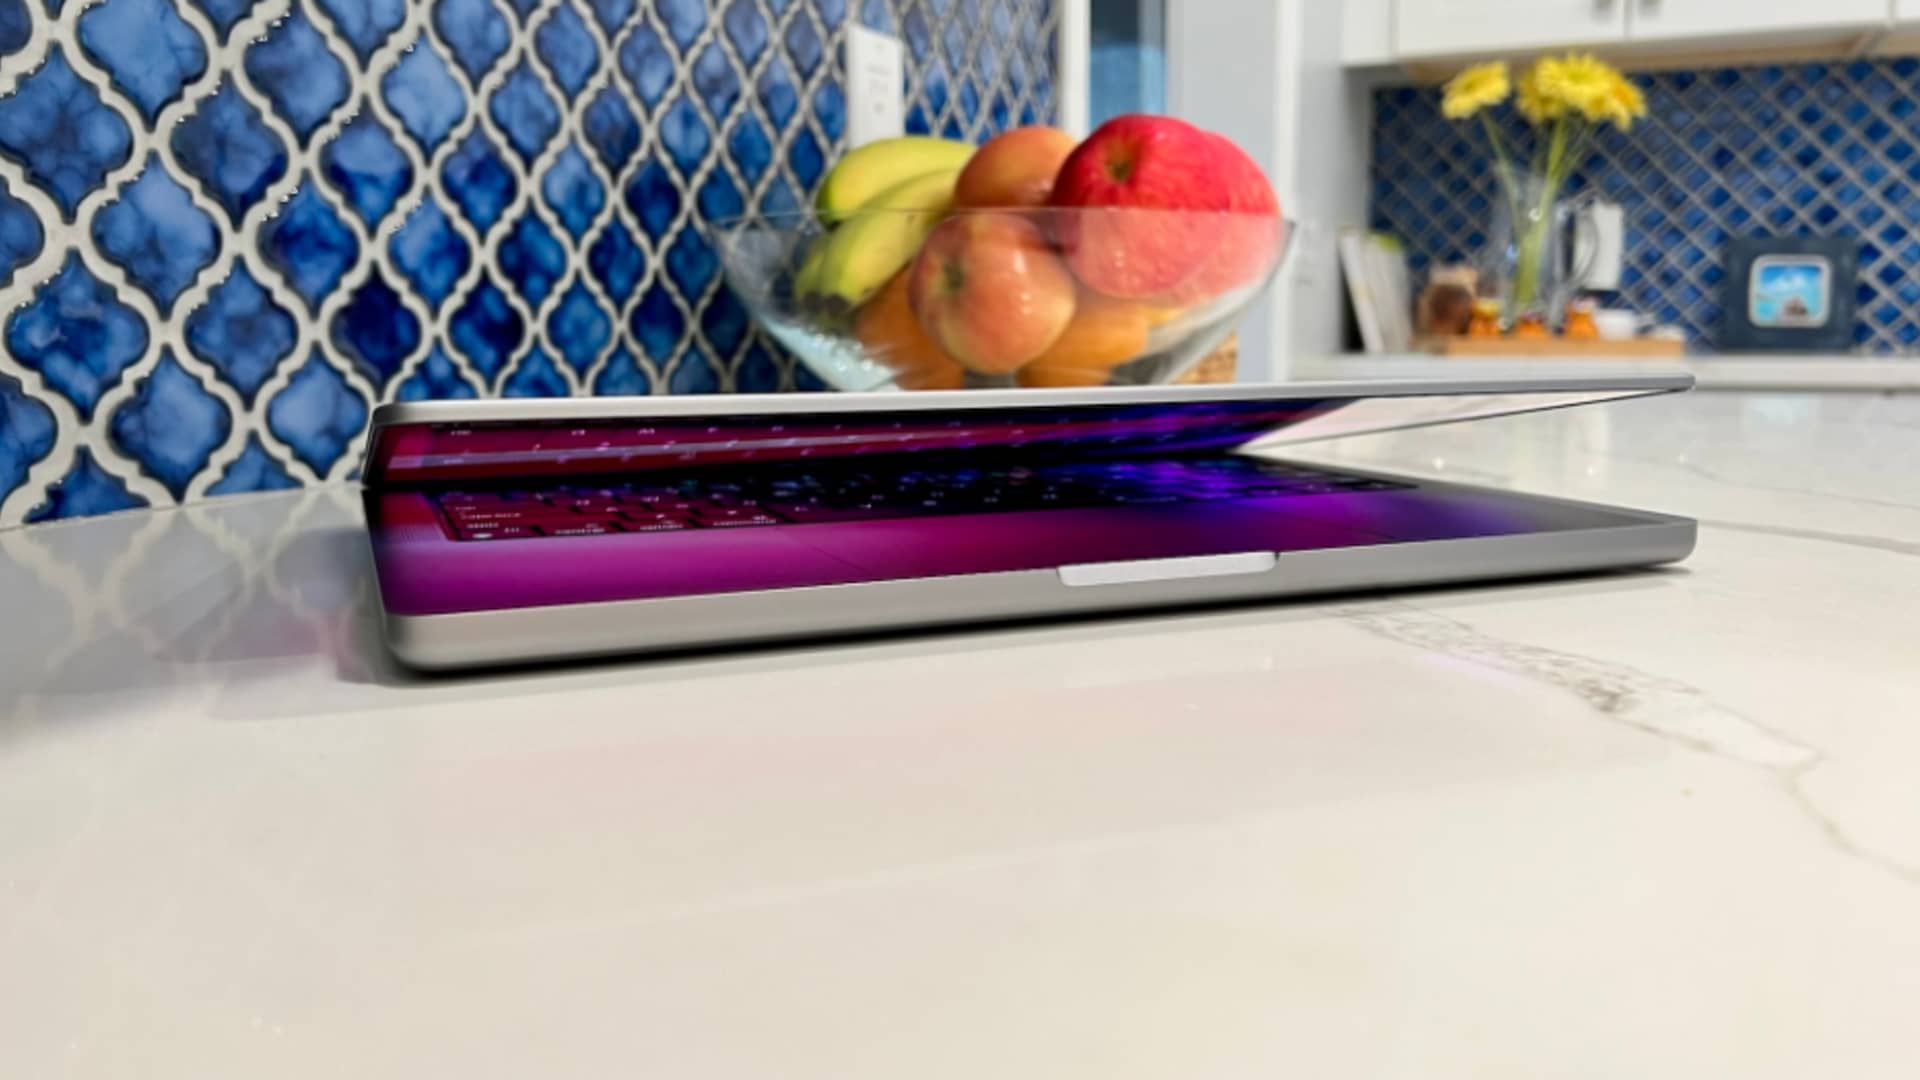 Apple's 14-inch MacBook Pro